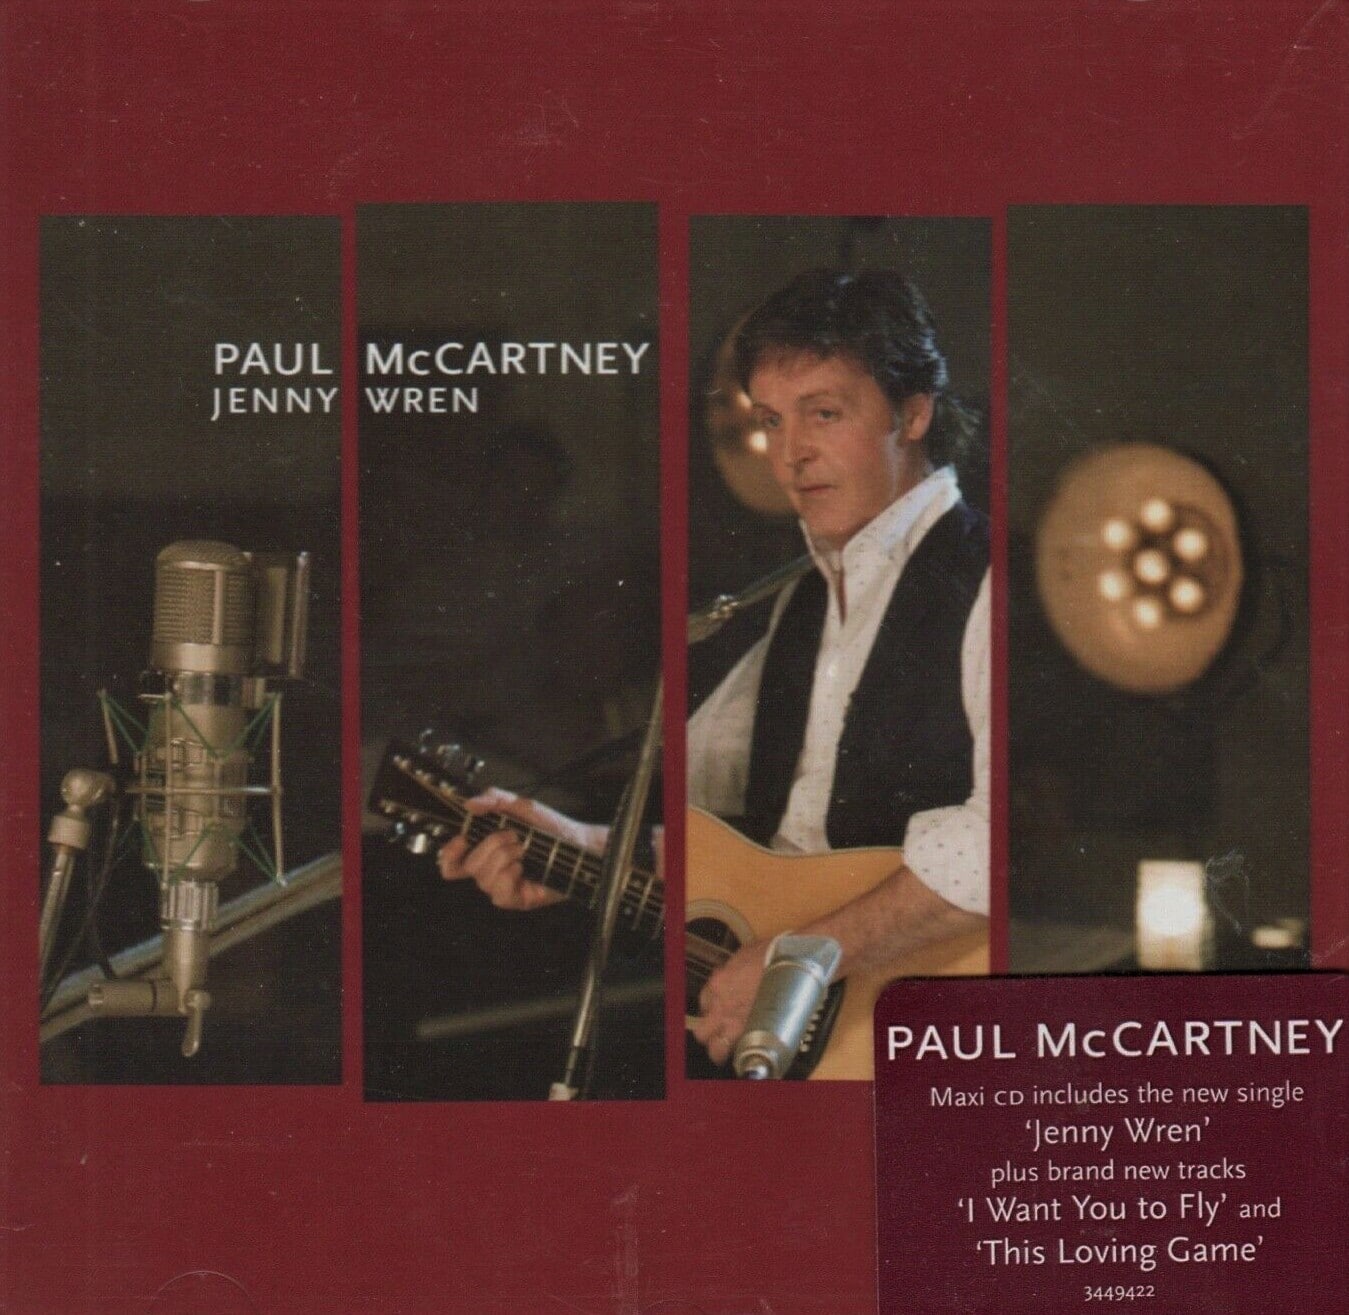 Paul McCartney Jenny Wren cds